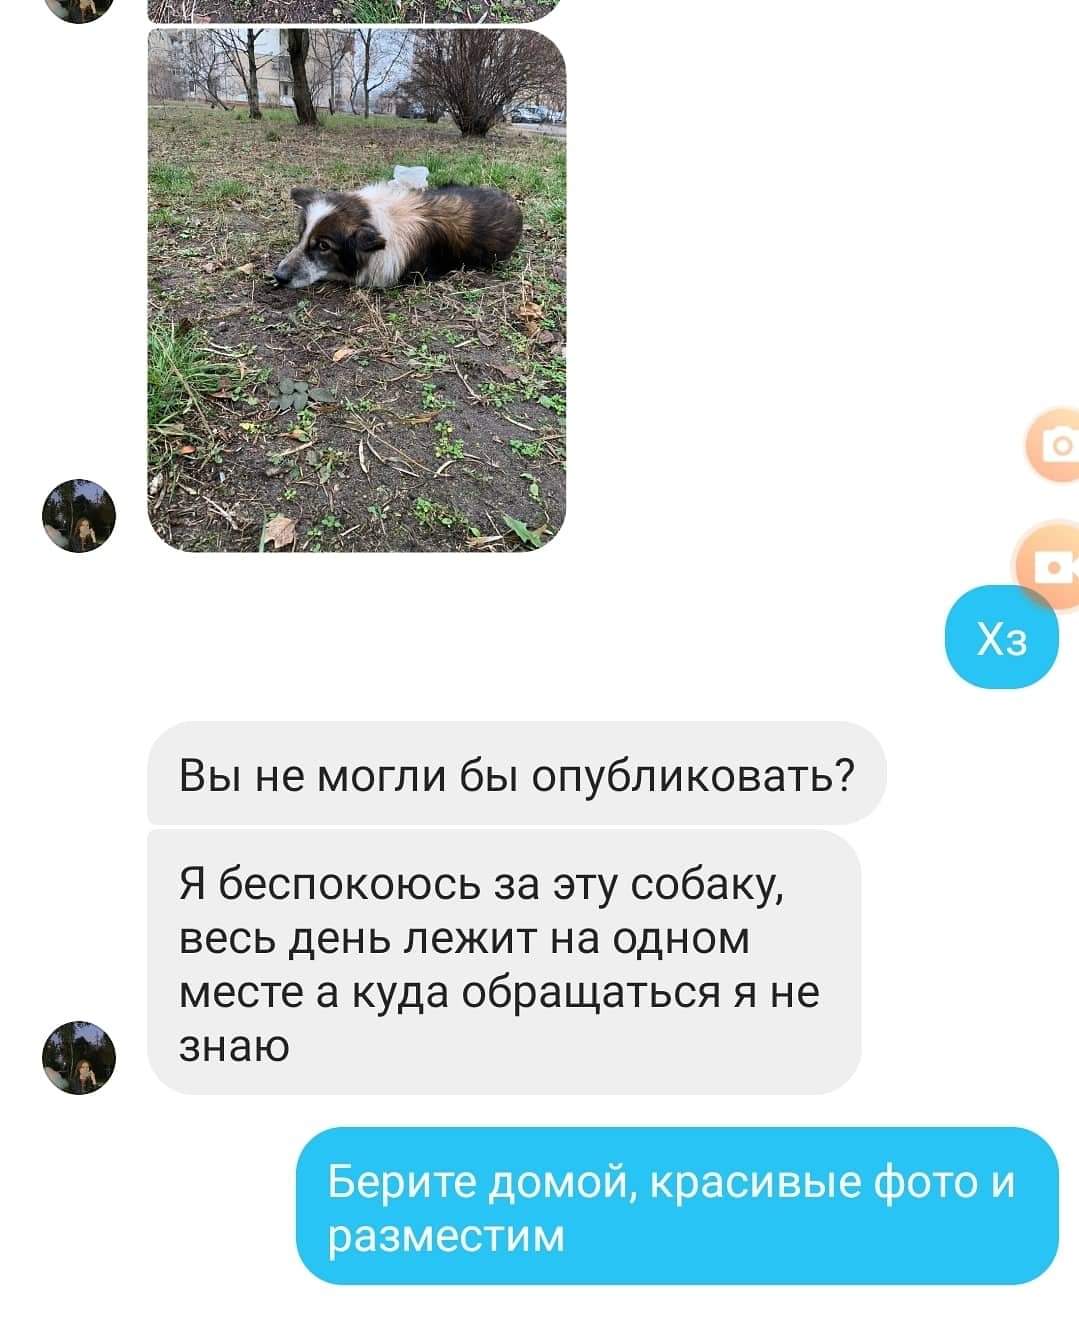 Алгоритм помощи бездомным животным - команда dtp.kiev.ua